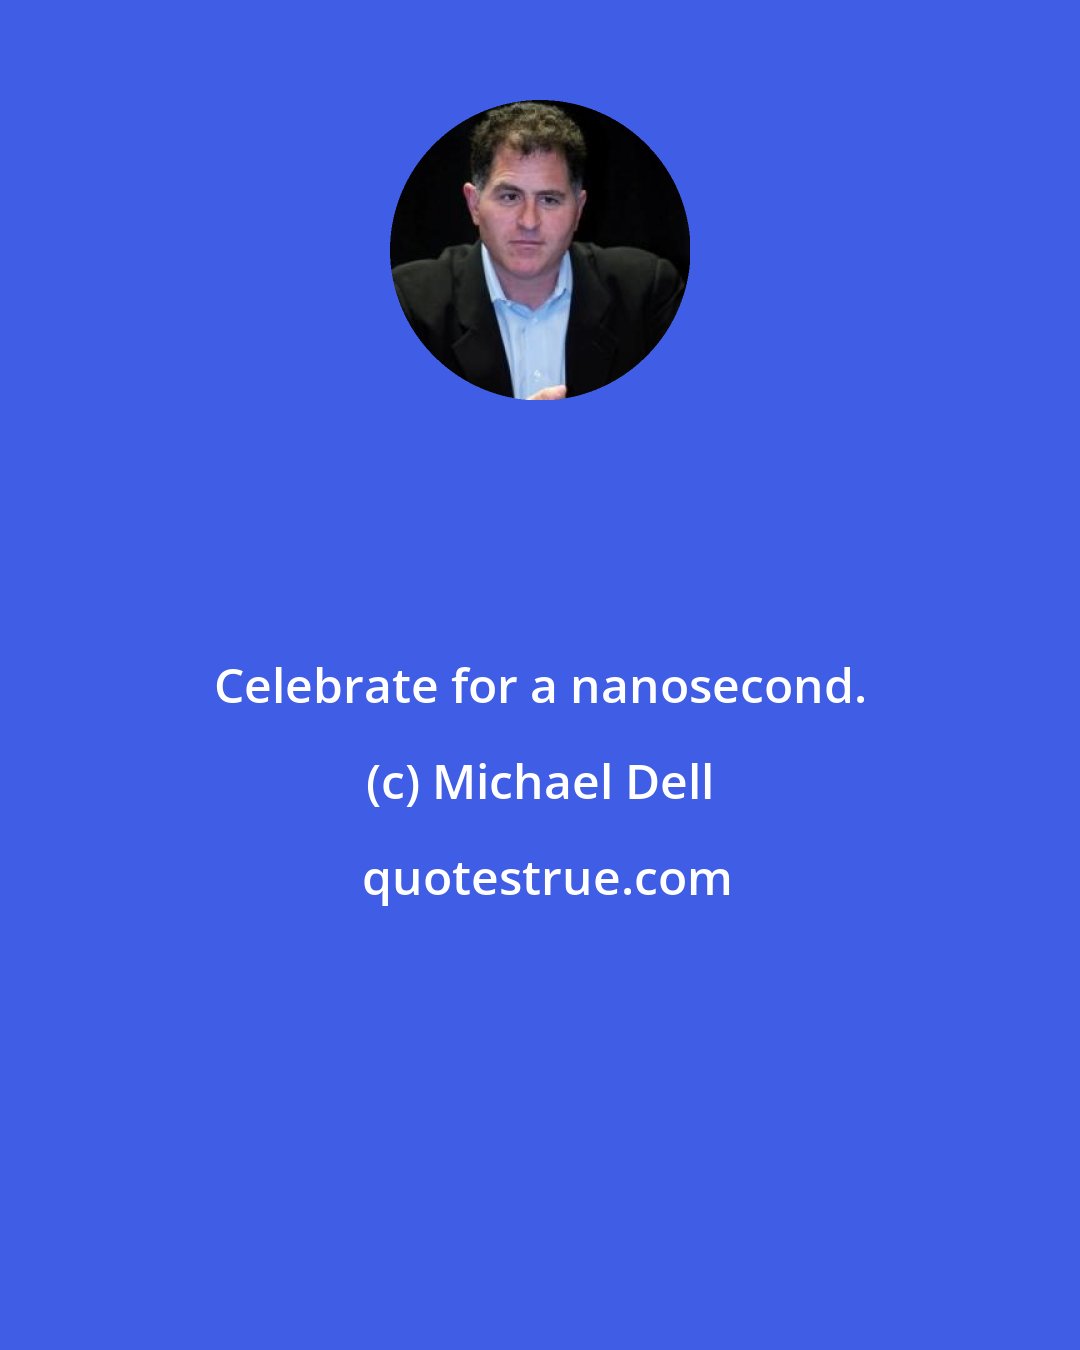 Michael Dell: Celebrate for a nanosecond.